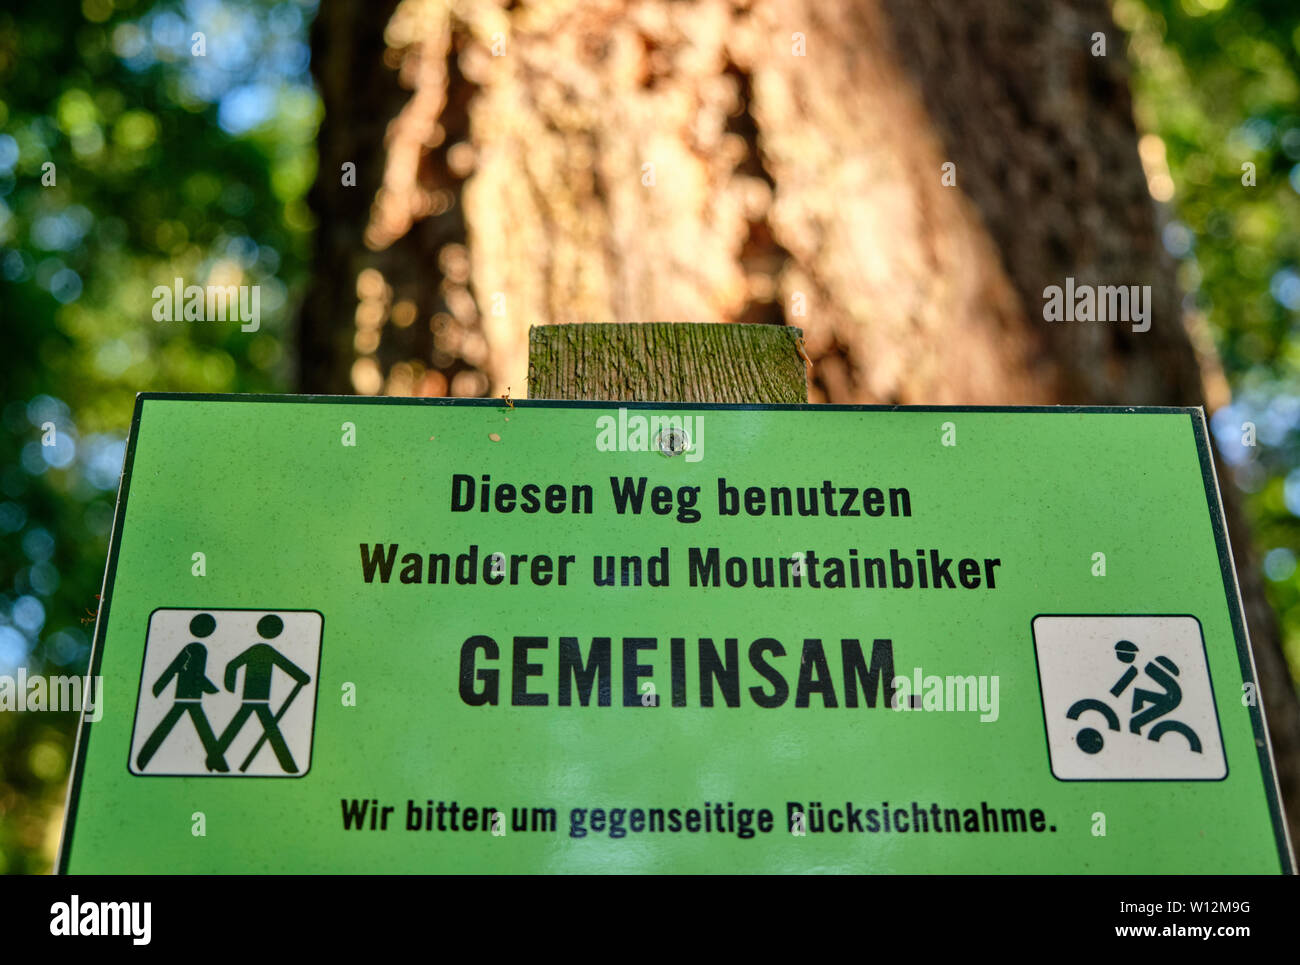 A sign at a path in the forest that says: Diesen Weg nutzen Wanderer und Mountainbiker gemeinsam. Wir bitten um gegenseitige Rücksichtnahme. Stock Photo